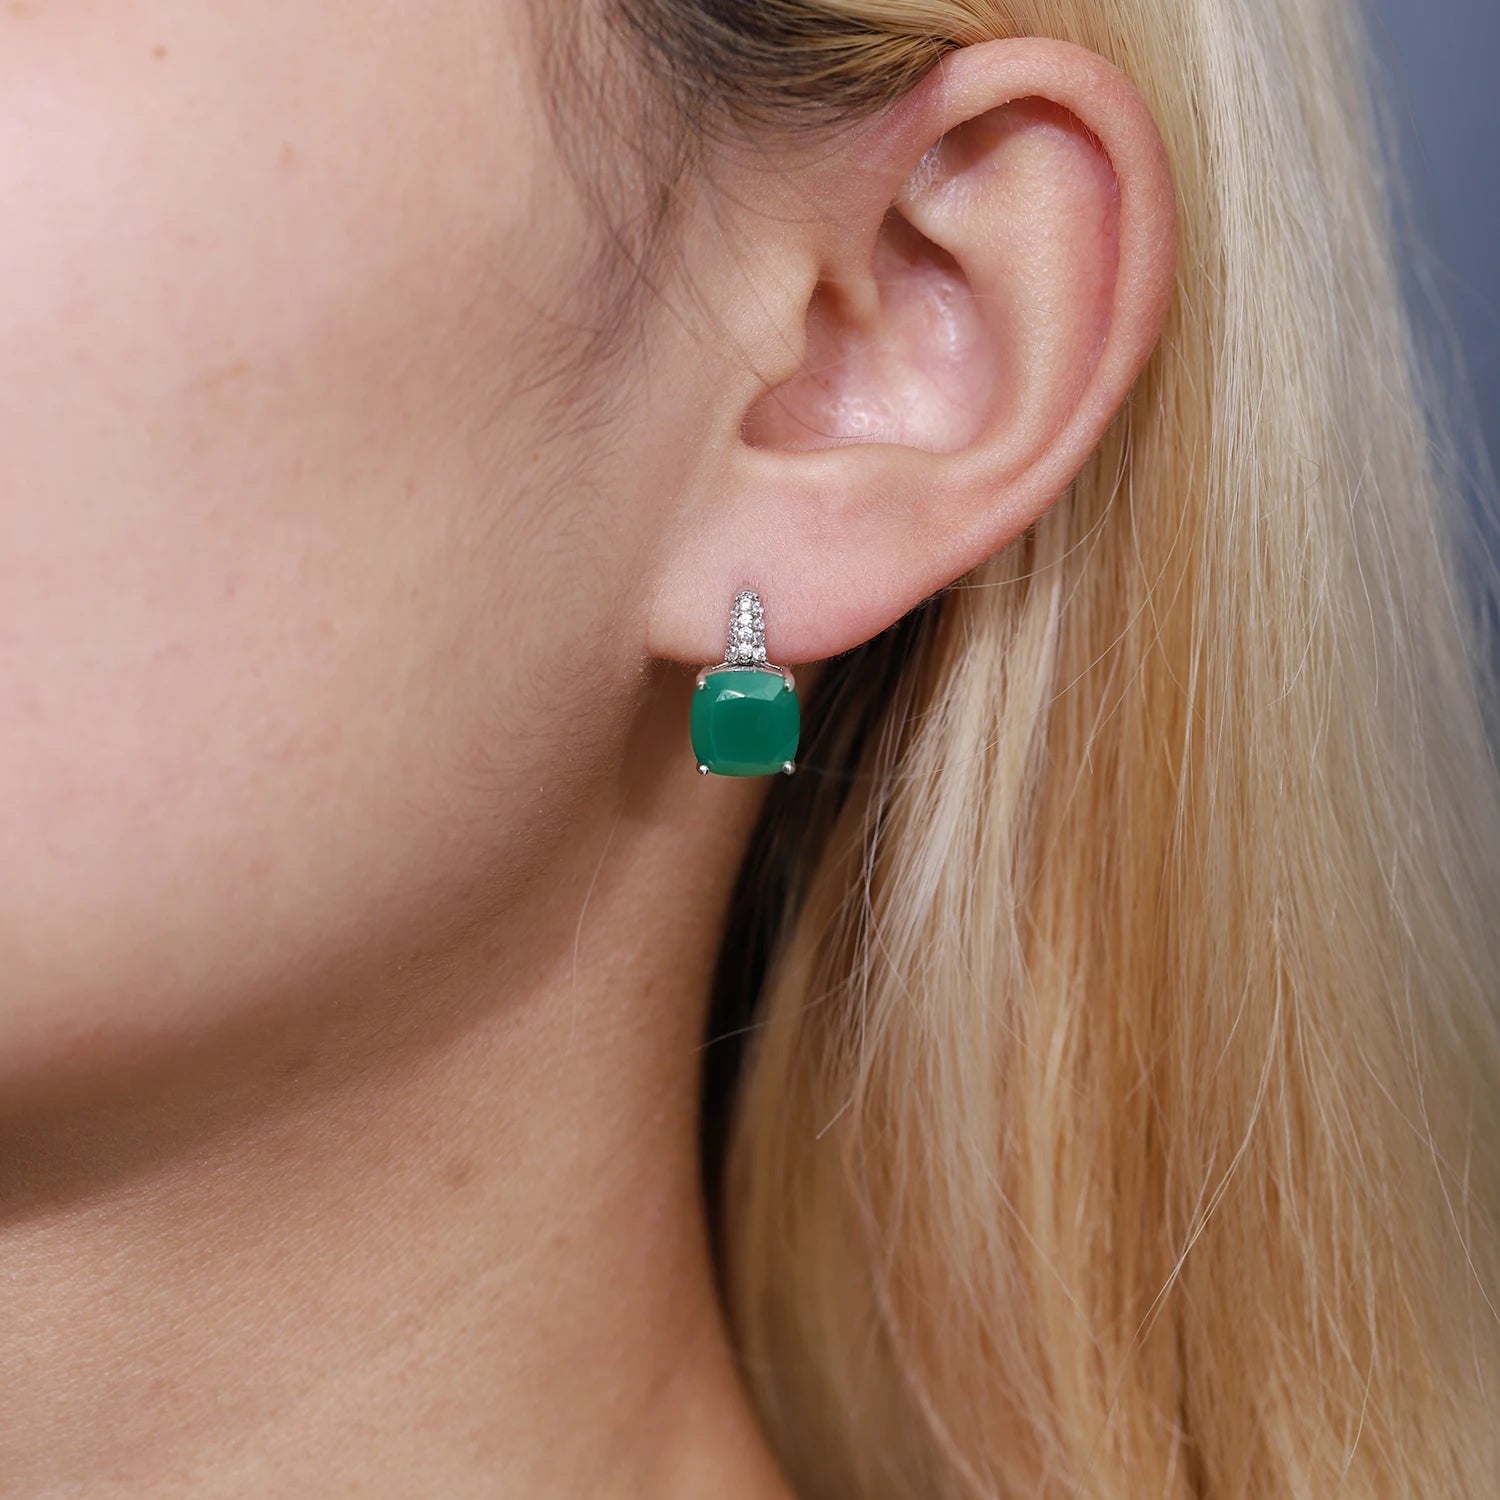 GEM'S BALLET 7.33Ct Natural Green Agate Gemstone Stud Earrings 925 Silver 585 14K 10K 18K Gold Women's Earrings Fine Jewelry